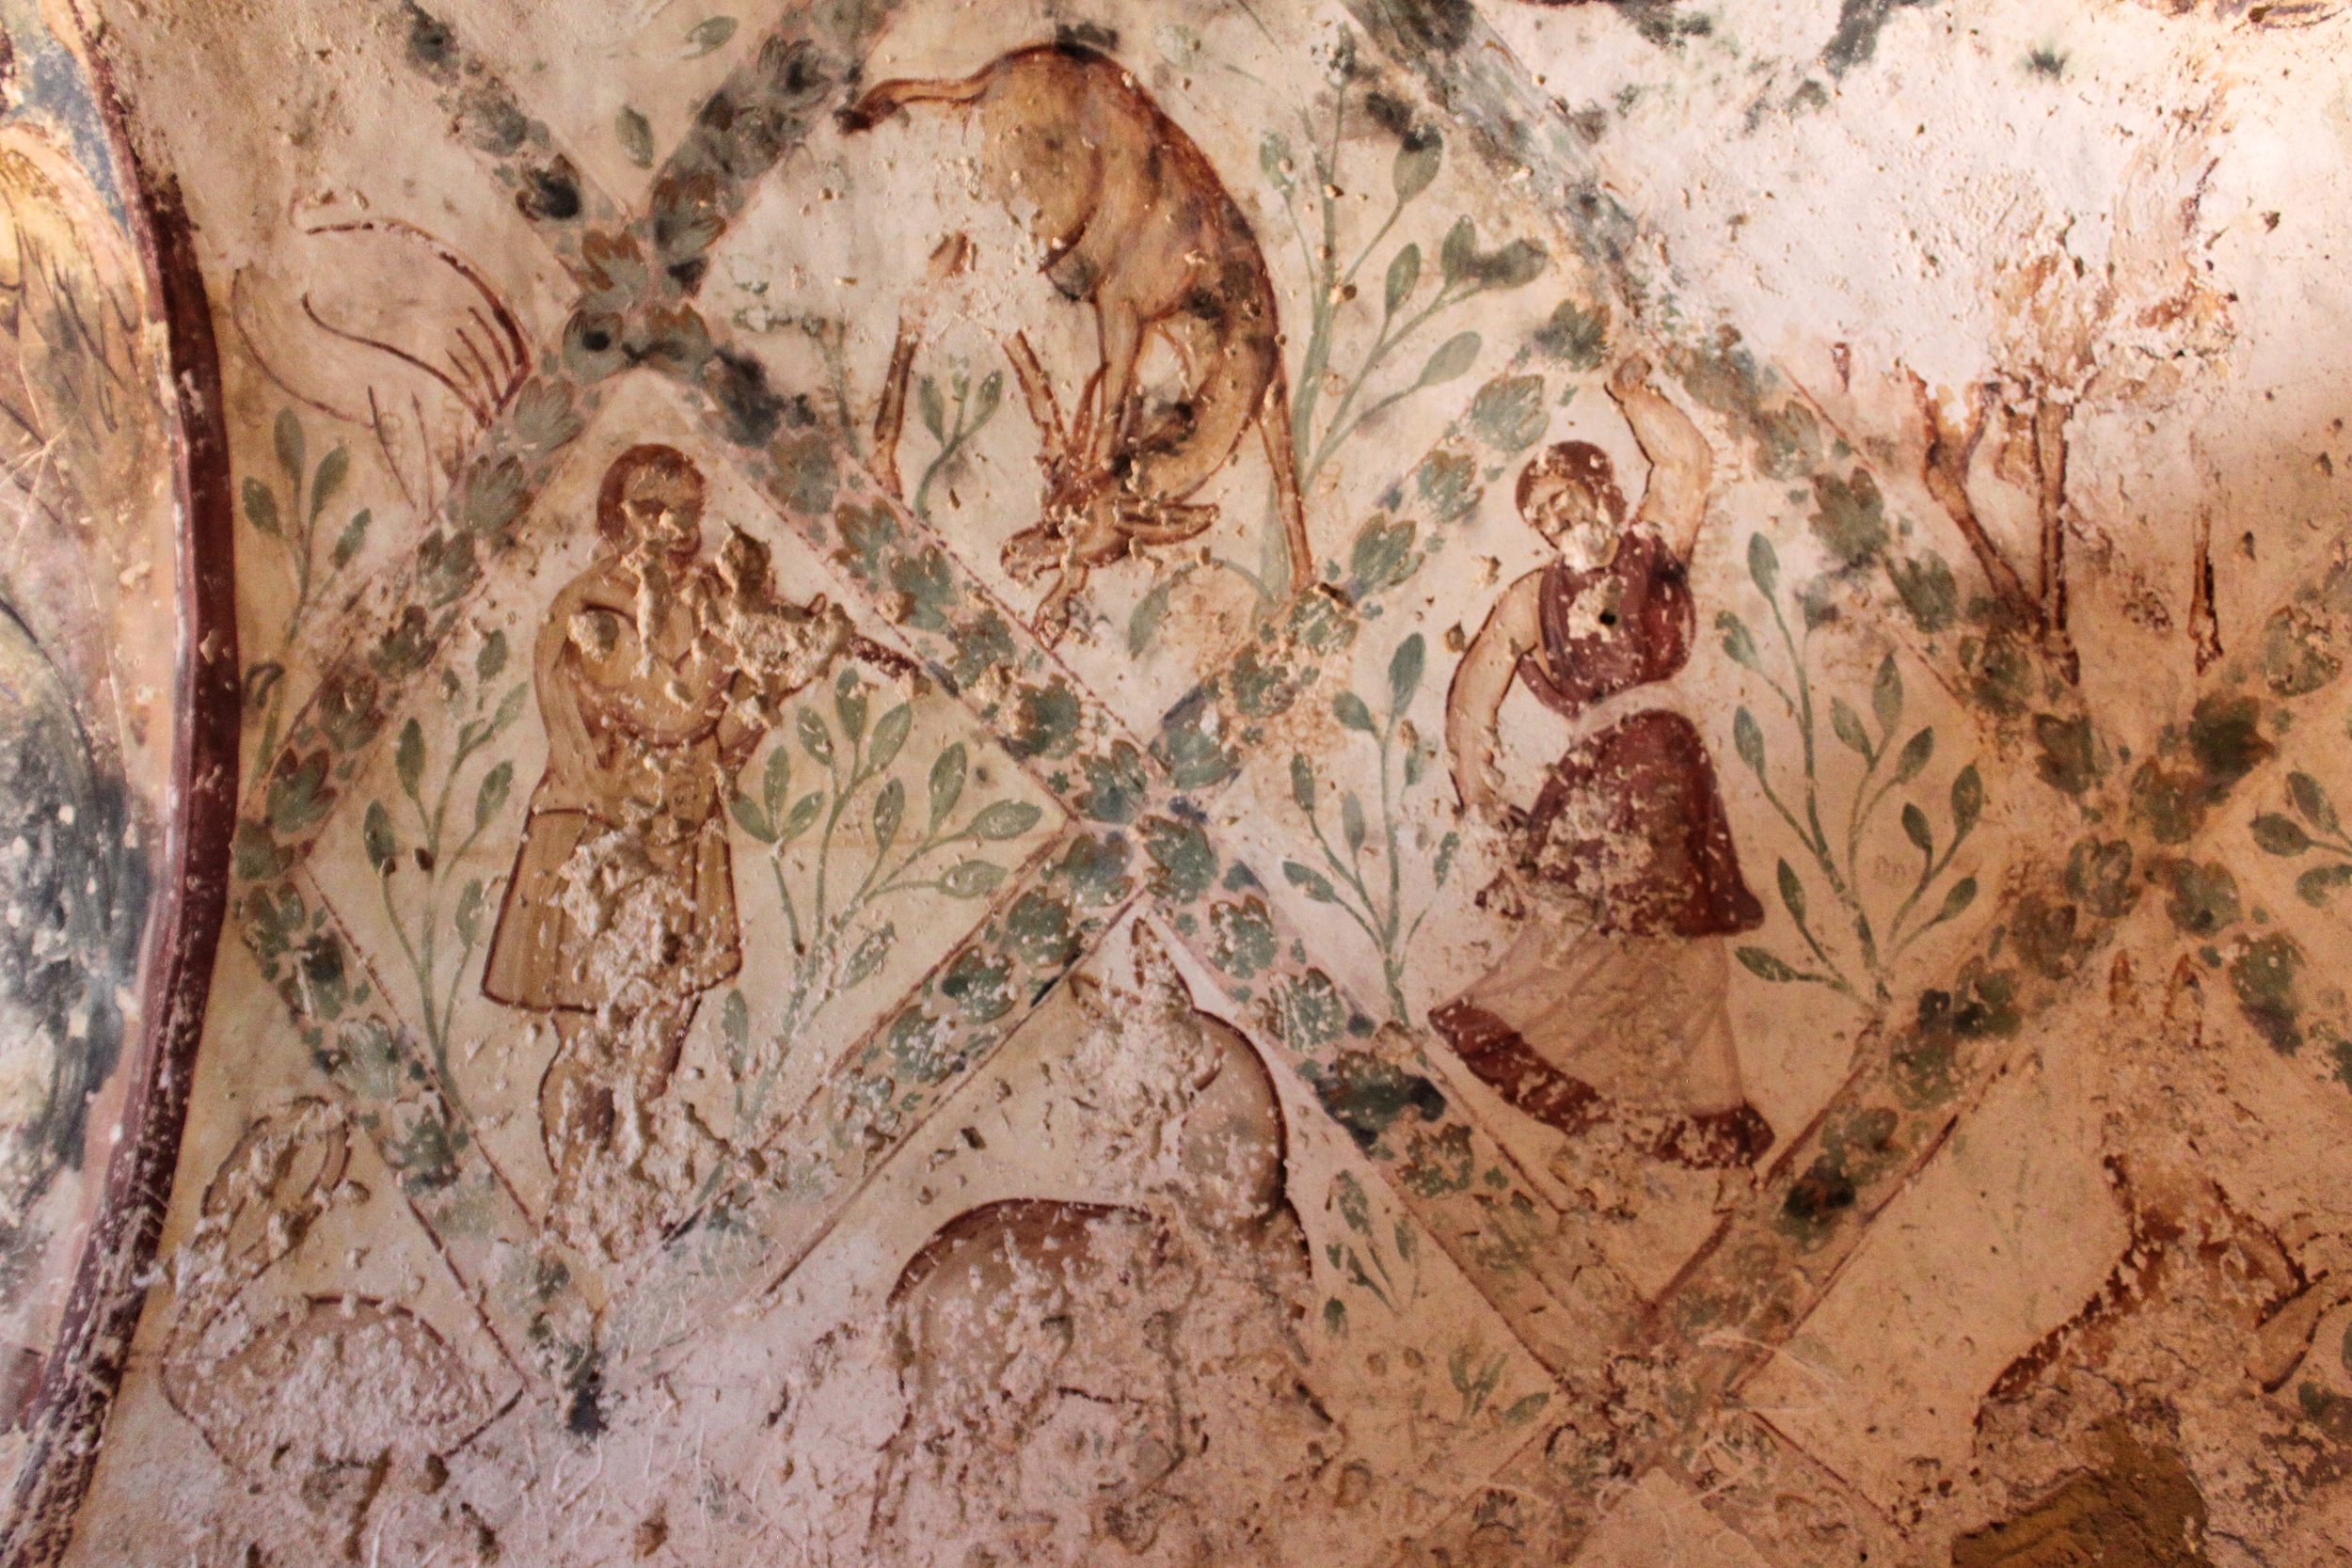 Qusayr 'Amra or Quseir Amra frescoes, "Desert Castle" in eastern Jordan